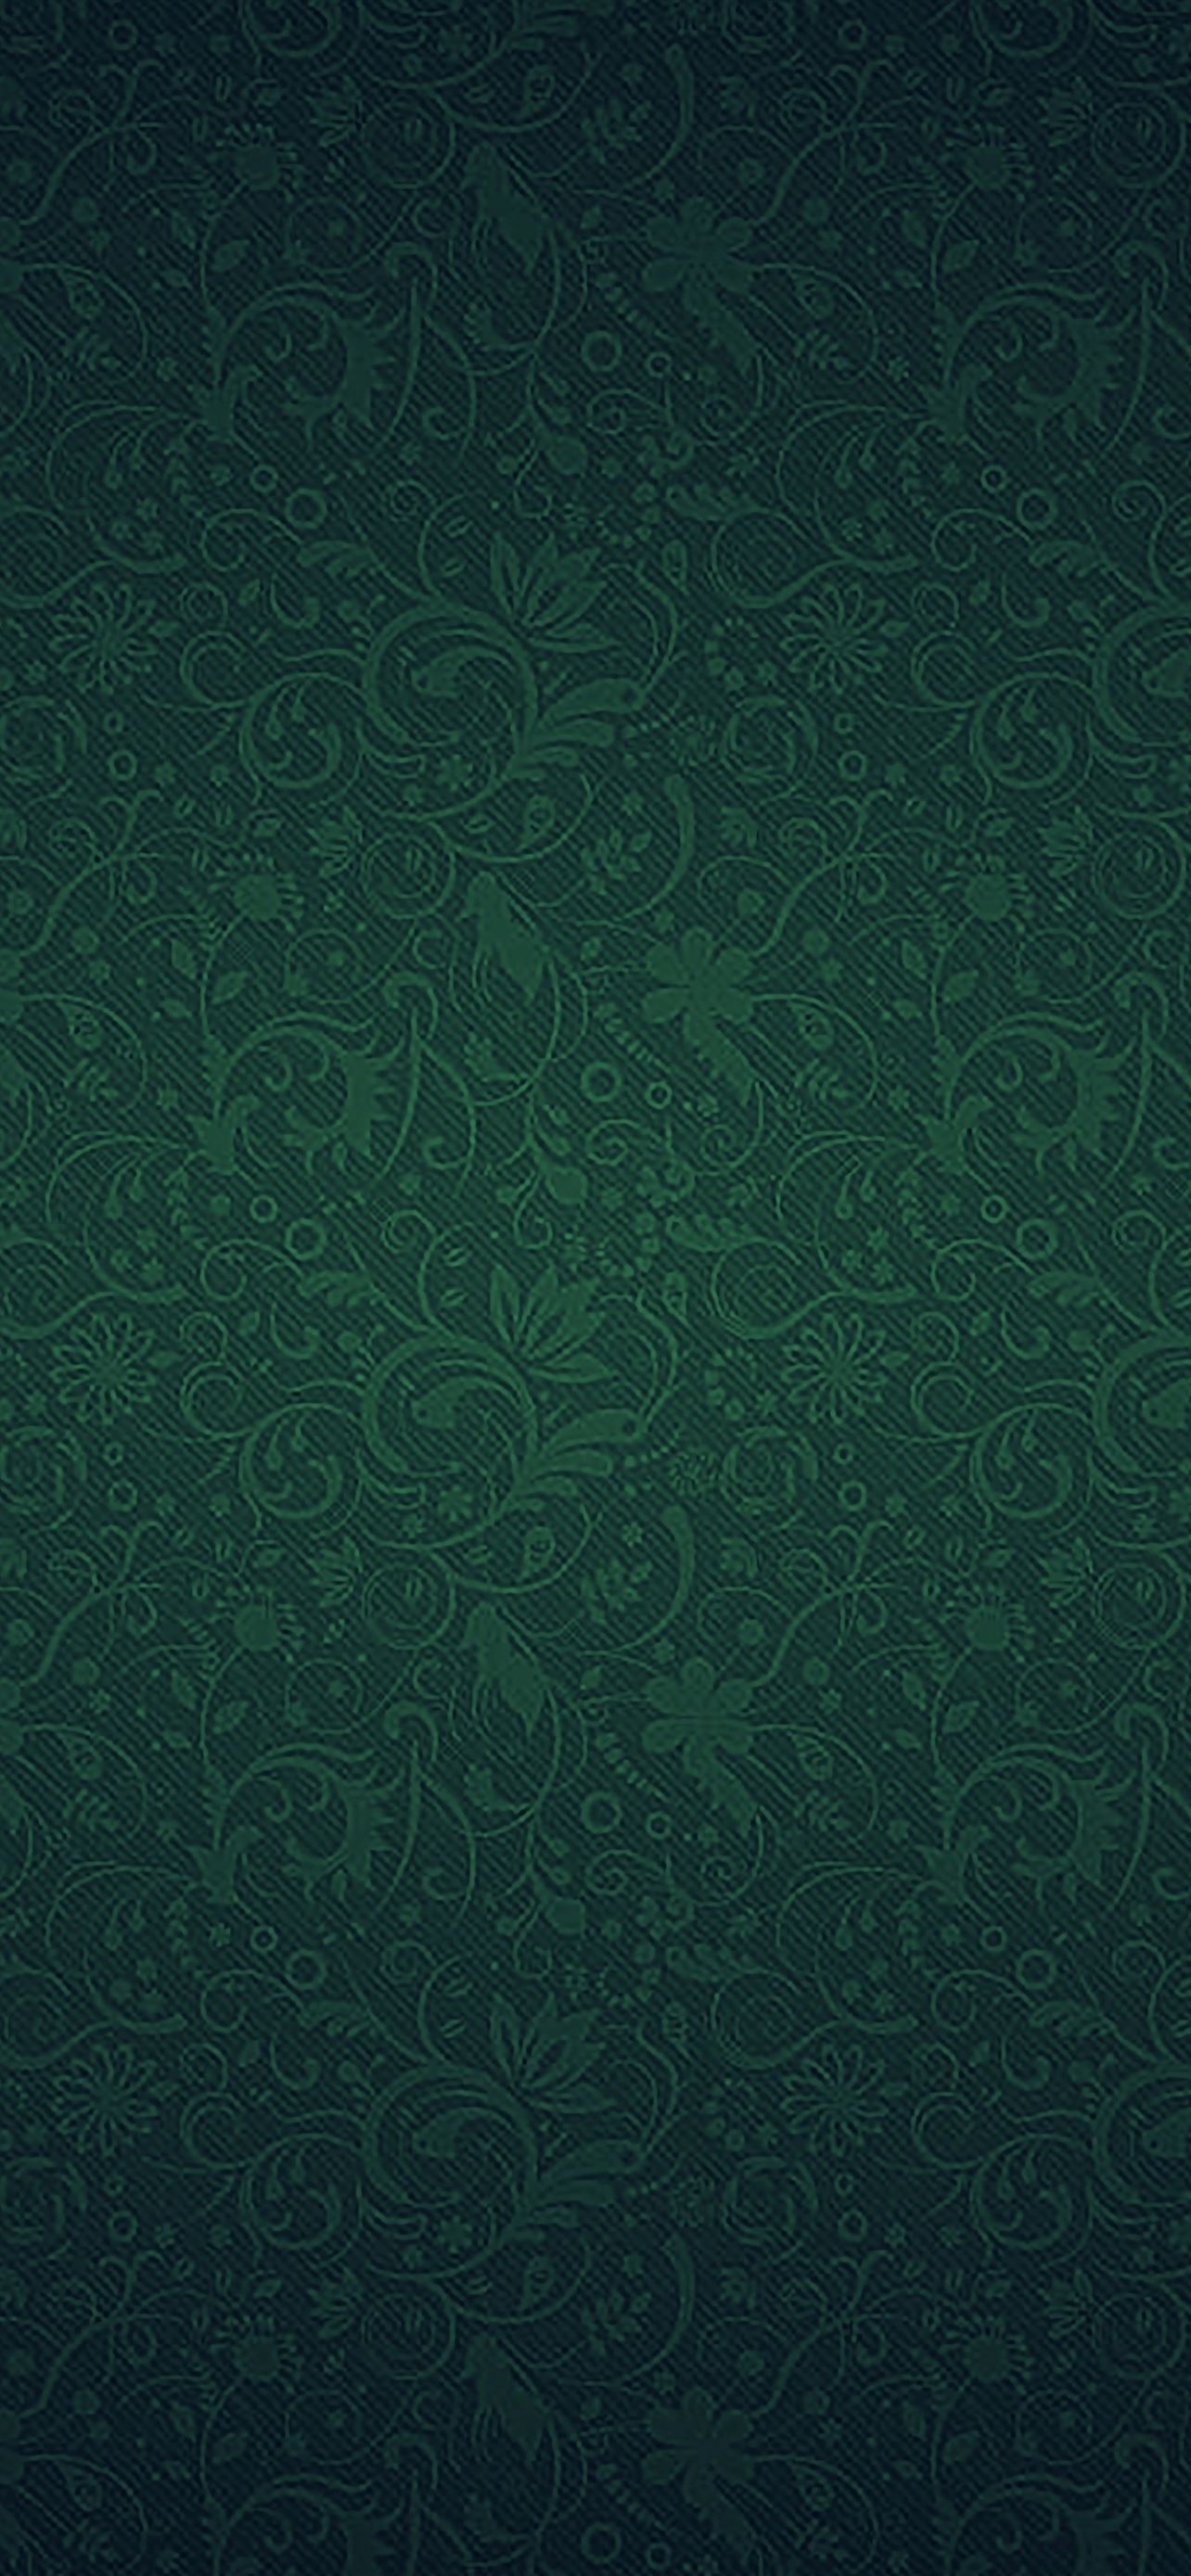 Thiết kế chất liệu trang trí màu xanh lá cây sáng tạo với họa tiết tinh tế sẽ mang lại cho bạn không gian sống thêm phần sinh động, tươi mới. Hãy xem ngay hình ảnh liên quan đến từ khóa \